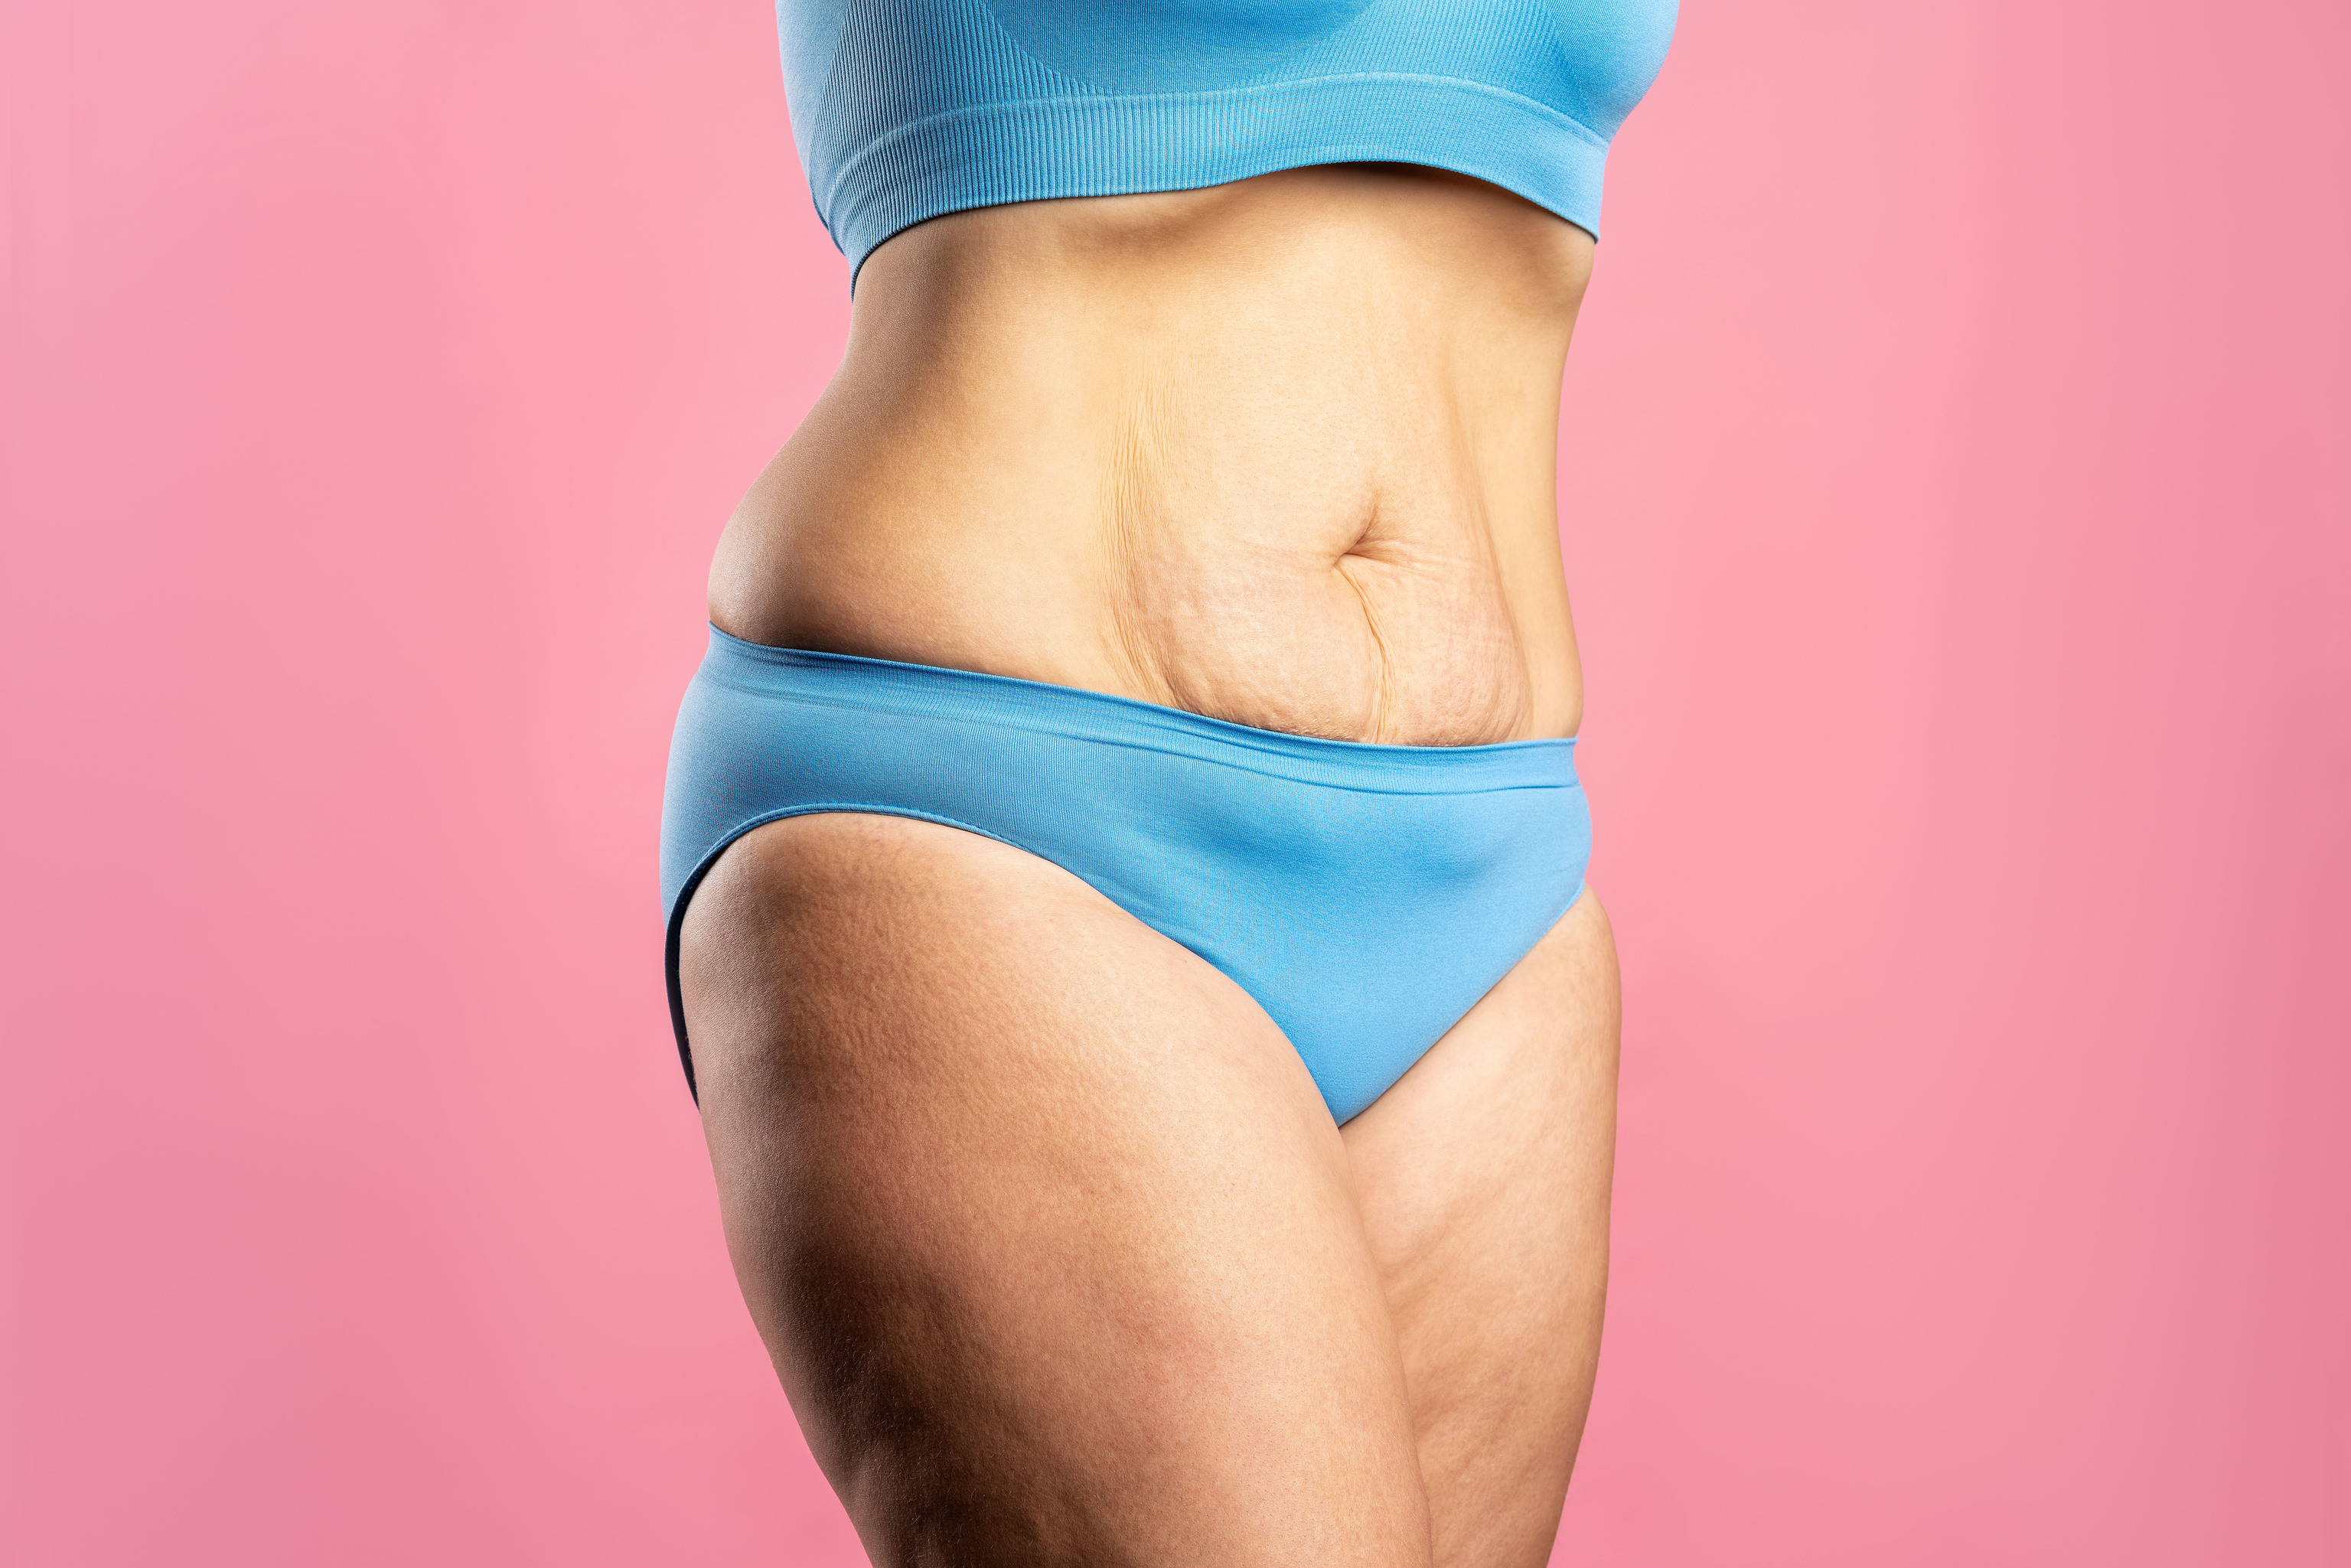 Tipos de barriga y cómo eliminarlas, Cómo perder peso y panza